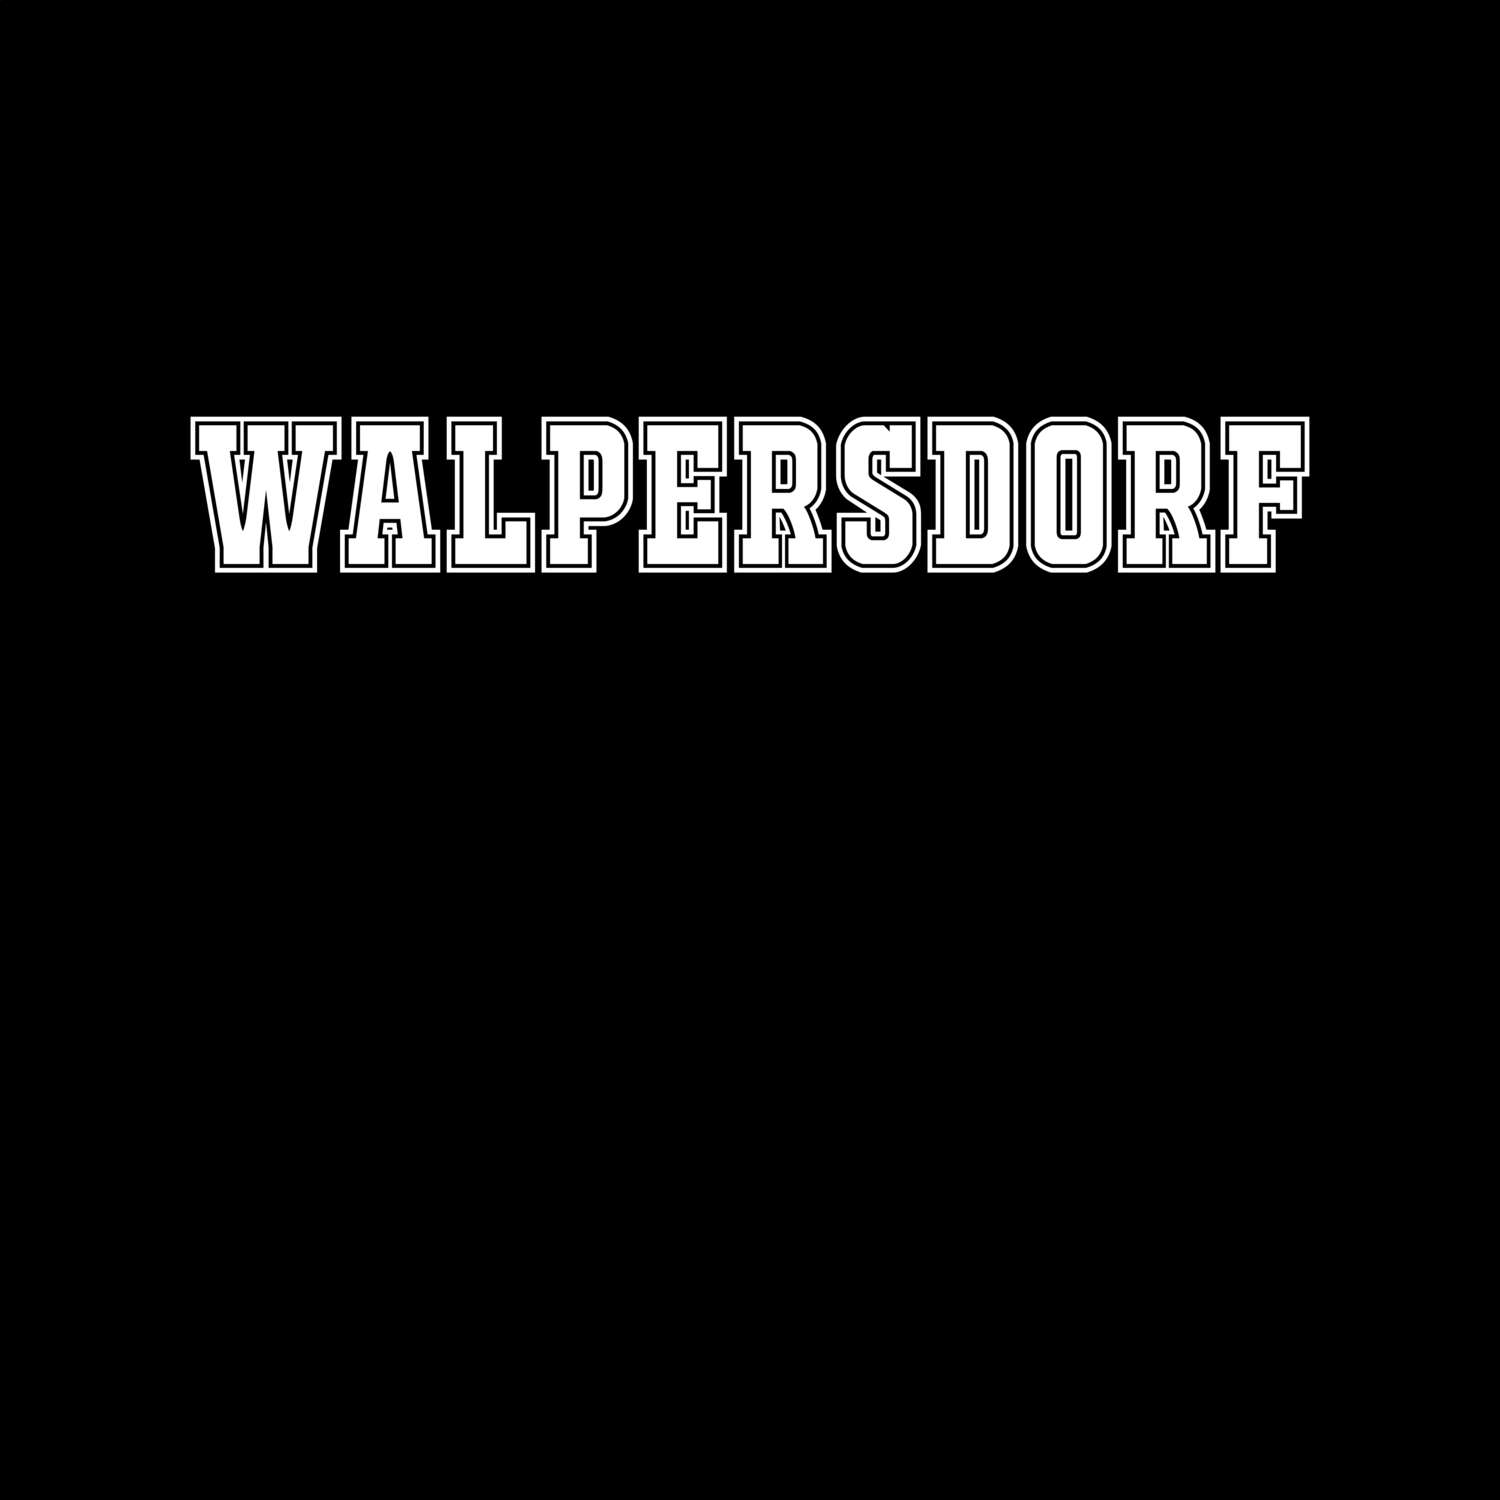 Walpersdorf T-Shirt »Classic«